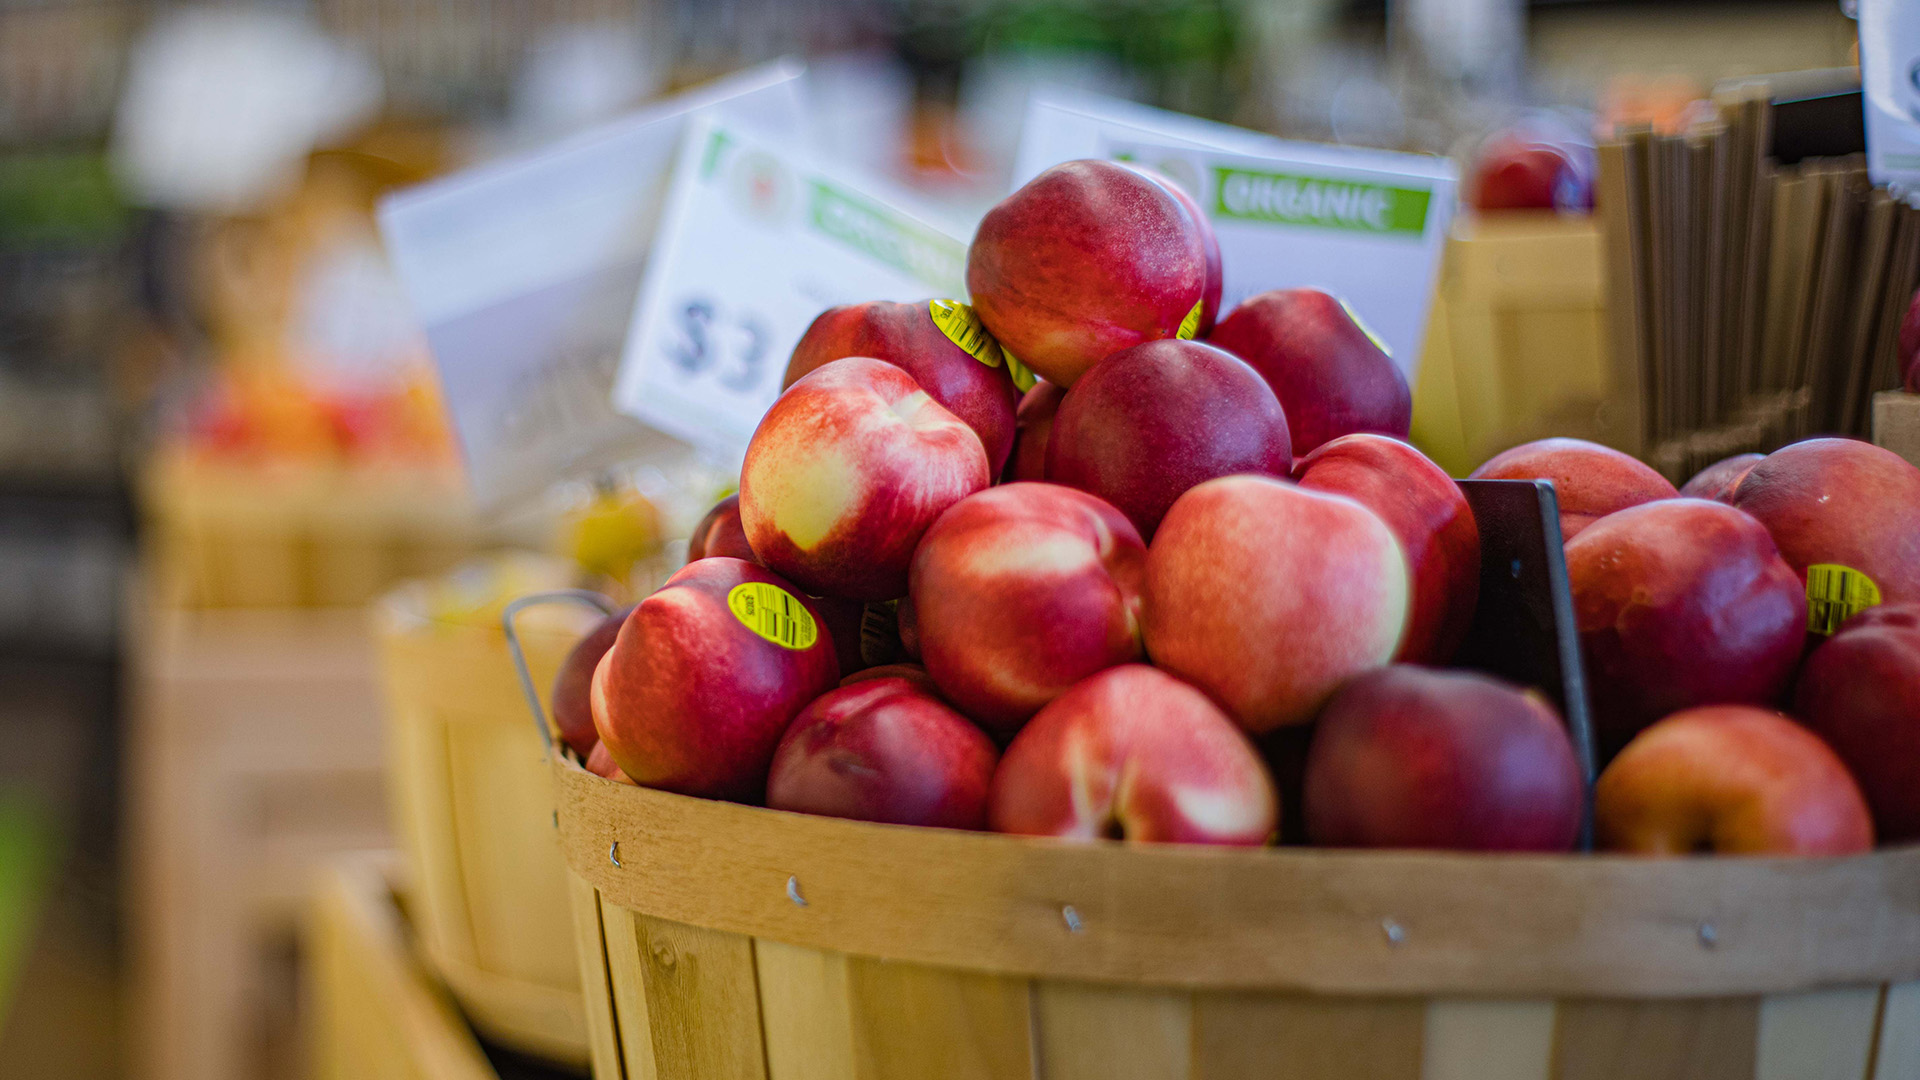 Basket of apples at market.